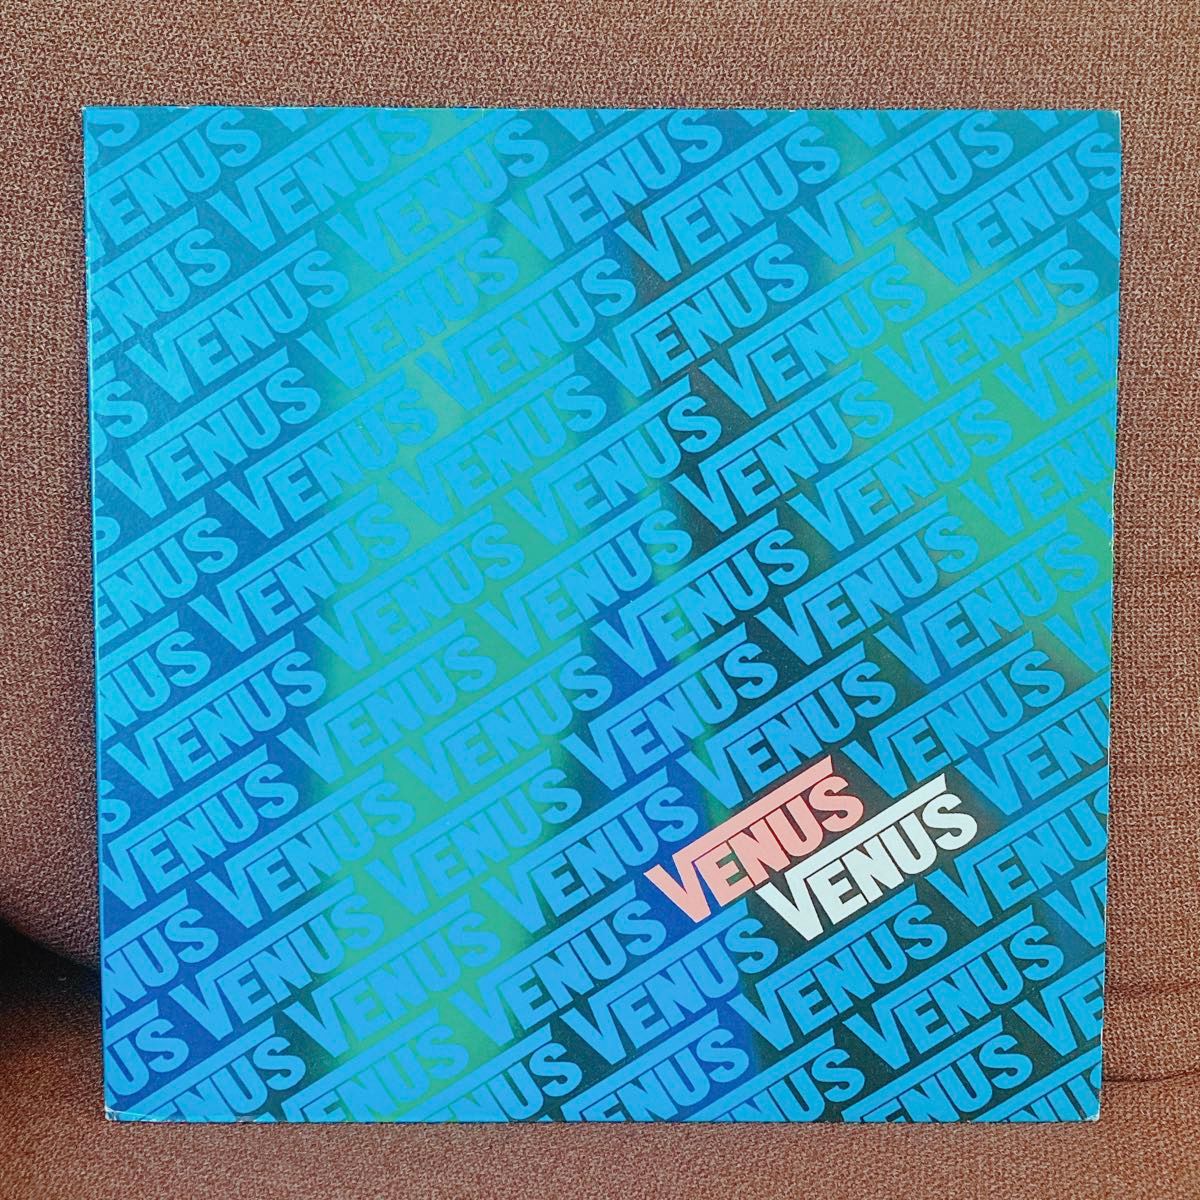 ヴィーナス・ペーターのアナログレコード｢Fall Remix｣渋谷系 Venus Peter LP 沖野俊太郎 レコード